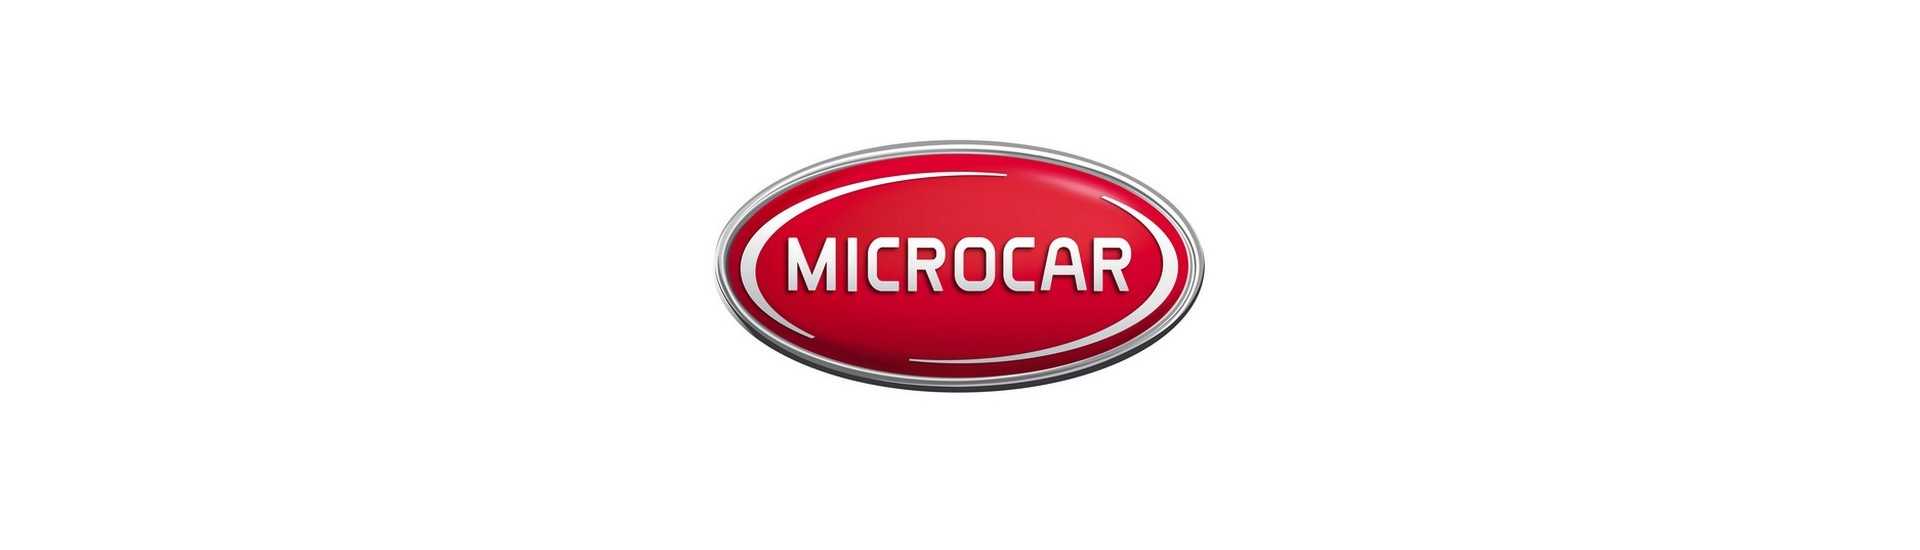 Phara și tuning la cel mai bun preț pentru mașină fără permis Microcar